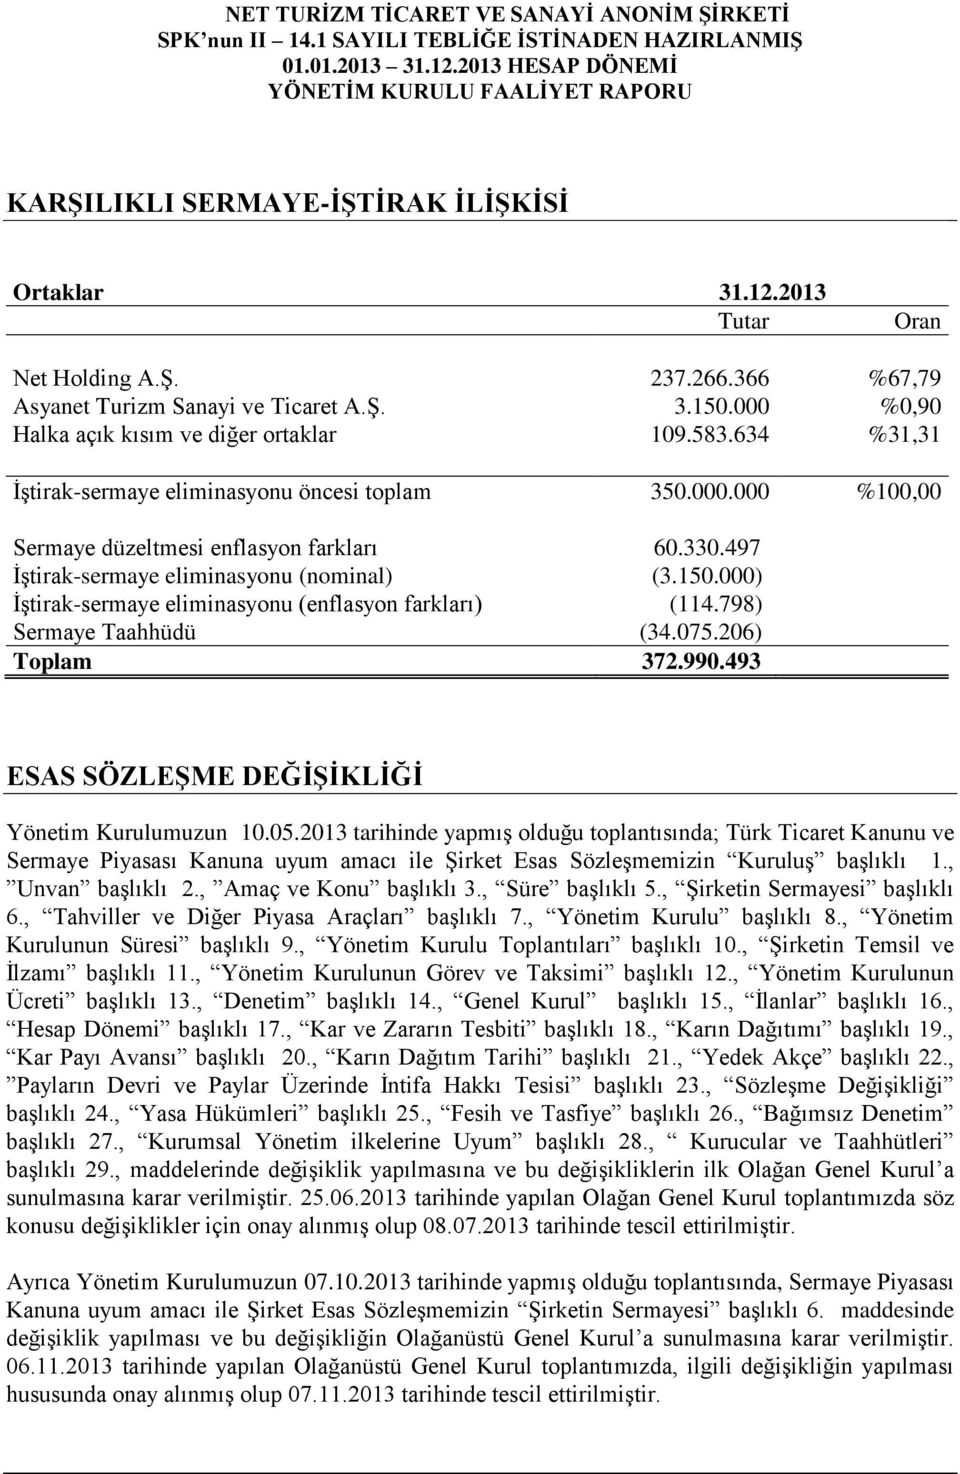 000) İştirak-sermaye eliminasyonu (enflasyon farkları) (114.798) Sermaye Taahhüdü (34.075.206) Toplam 372.990.493 ESAS SÖZLEŞME DEĞİŞİKLİĞİ Yönetim Kurulumuzun 10.05.